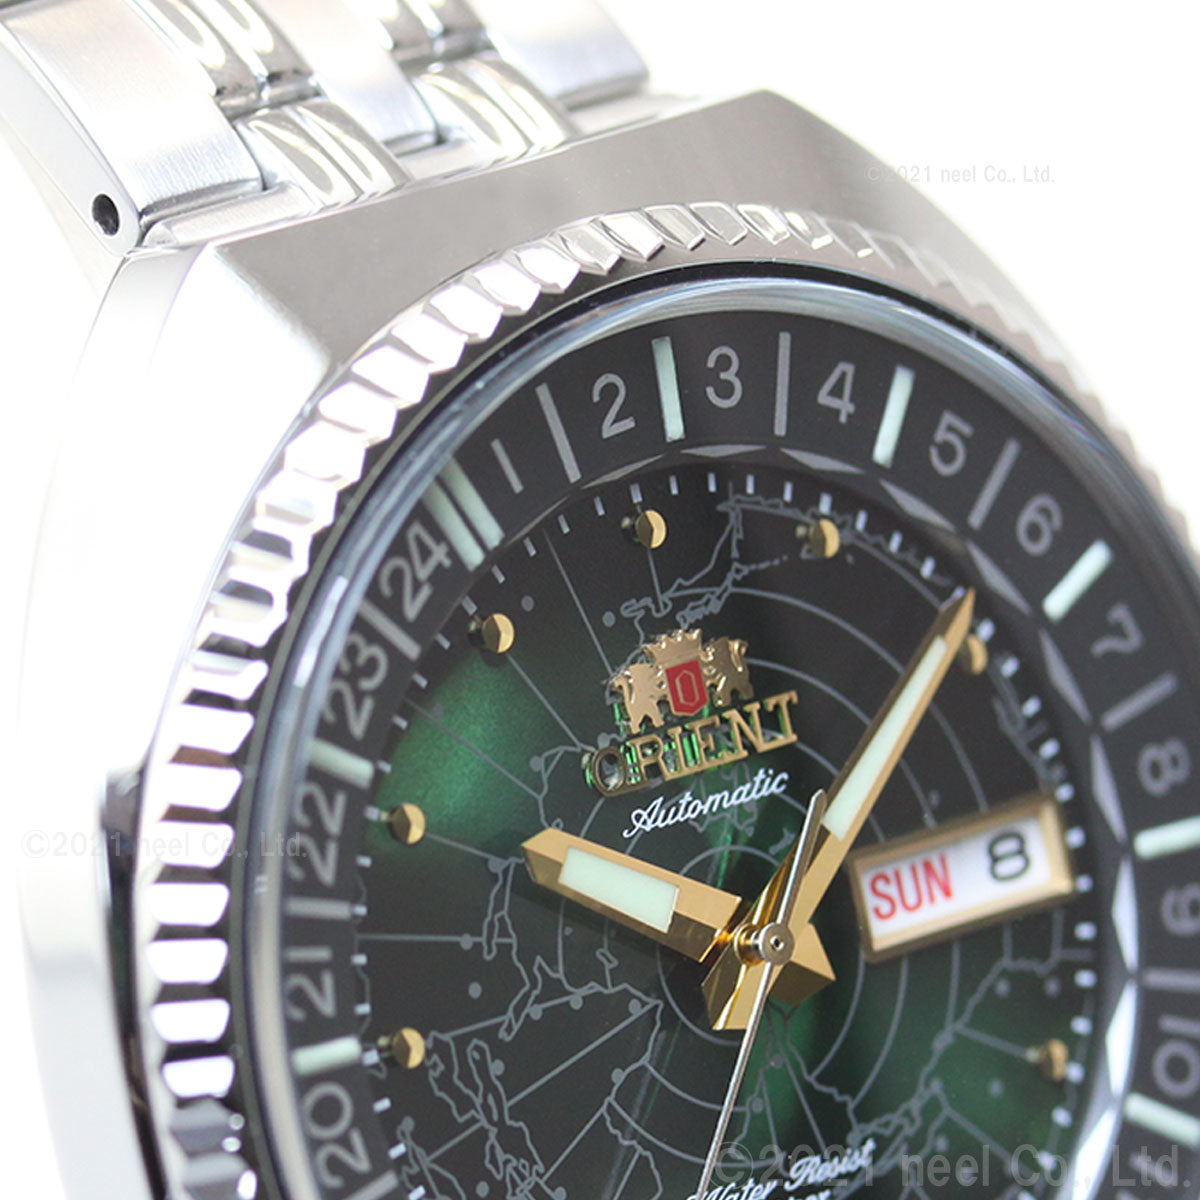 オリエント ORIENT 腕時計 メンズ 自動巻き リバイバル REVIVAL ワールドマップ RN-AA0E02E